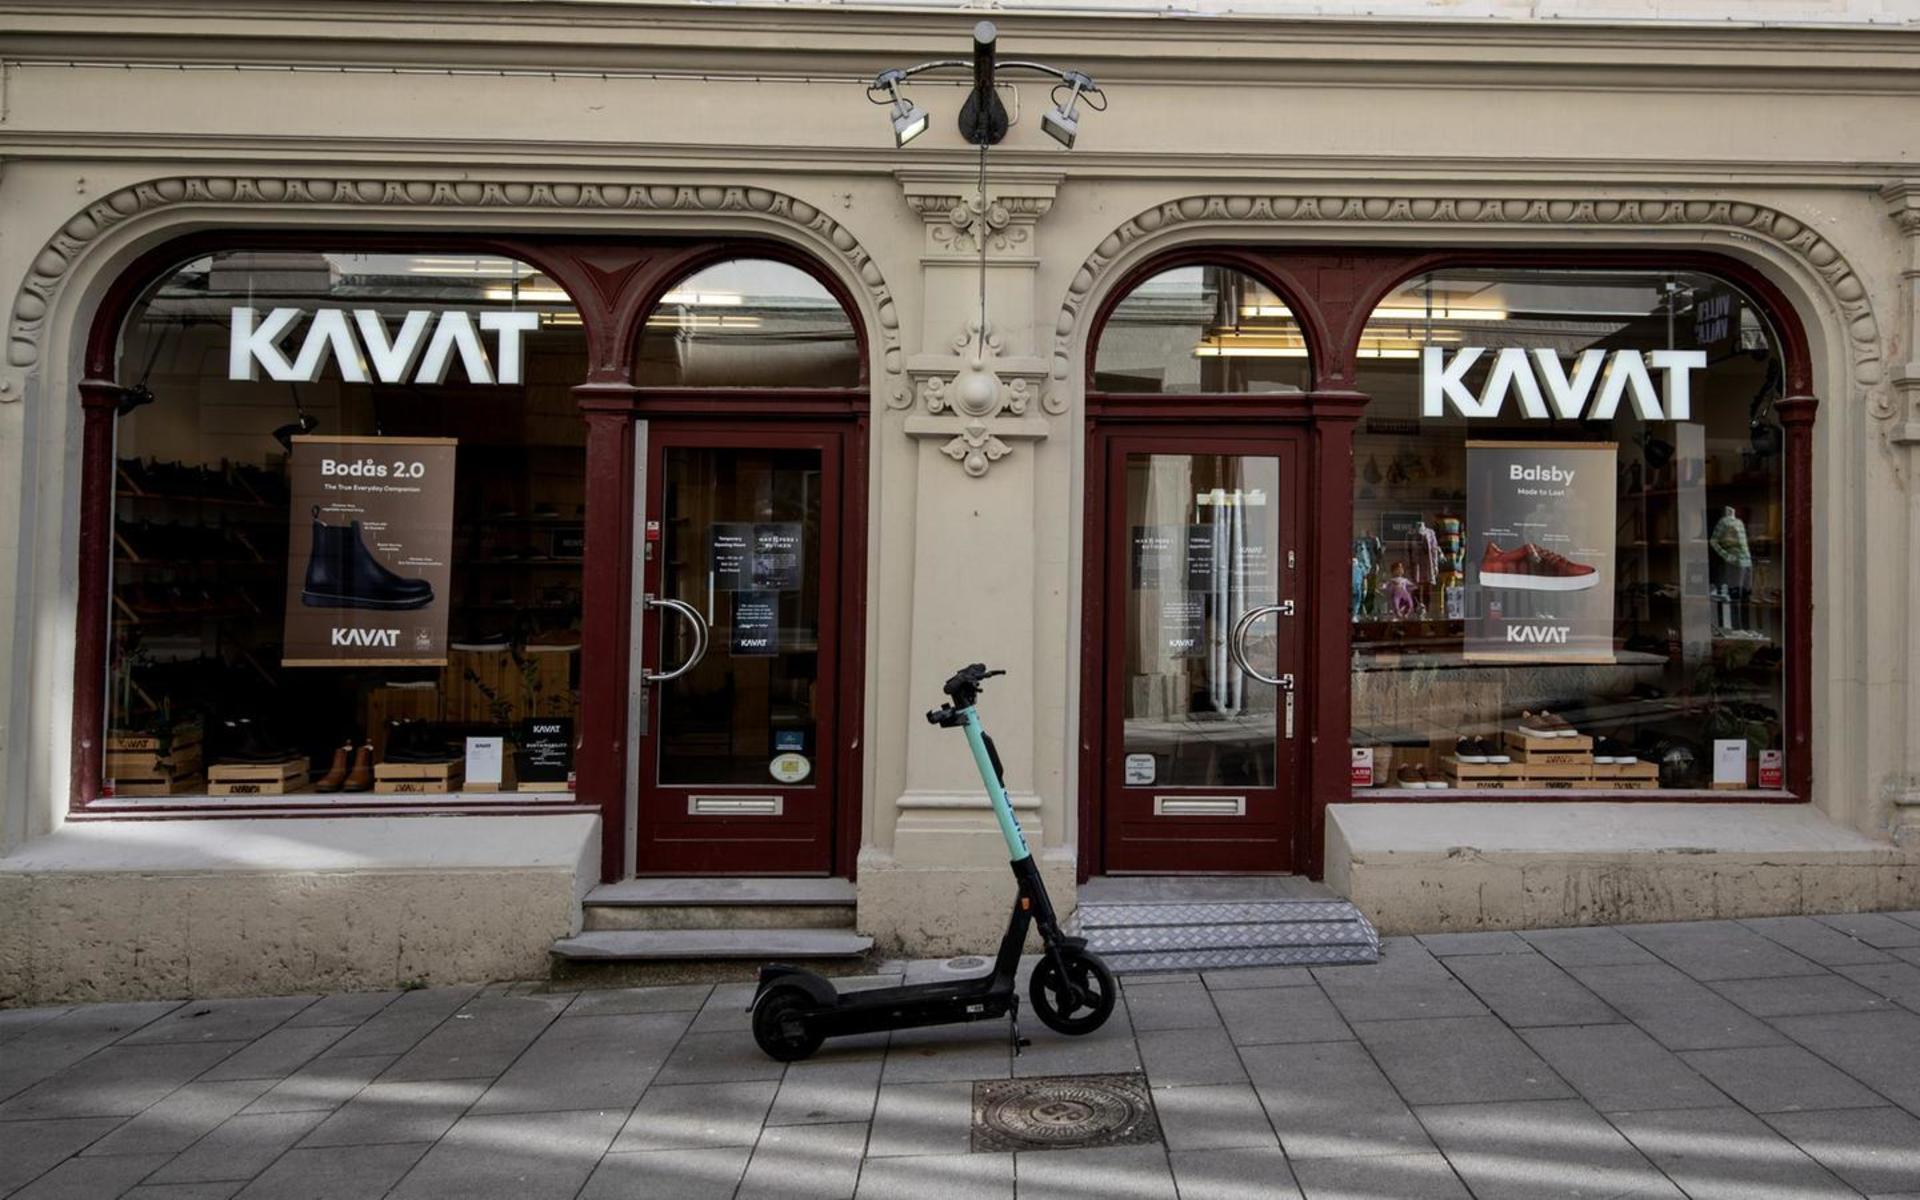 När det svenska skoföretaget Kavat för nio år sedan flyttade sin produktion från Kumla till Bosnien lovade bolaget införa svensk arbetsetik och svenska värderingar. Företaget fick nästan 700 000 kronor i biståndspengar från Sida för att leva upp till detta löfte. Bild från Kavat butik på Korsgatan i Göteborg.